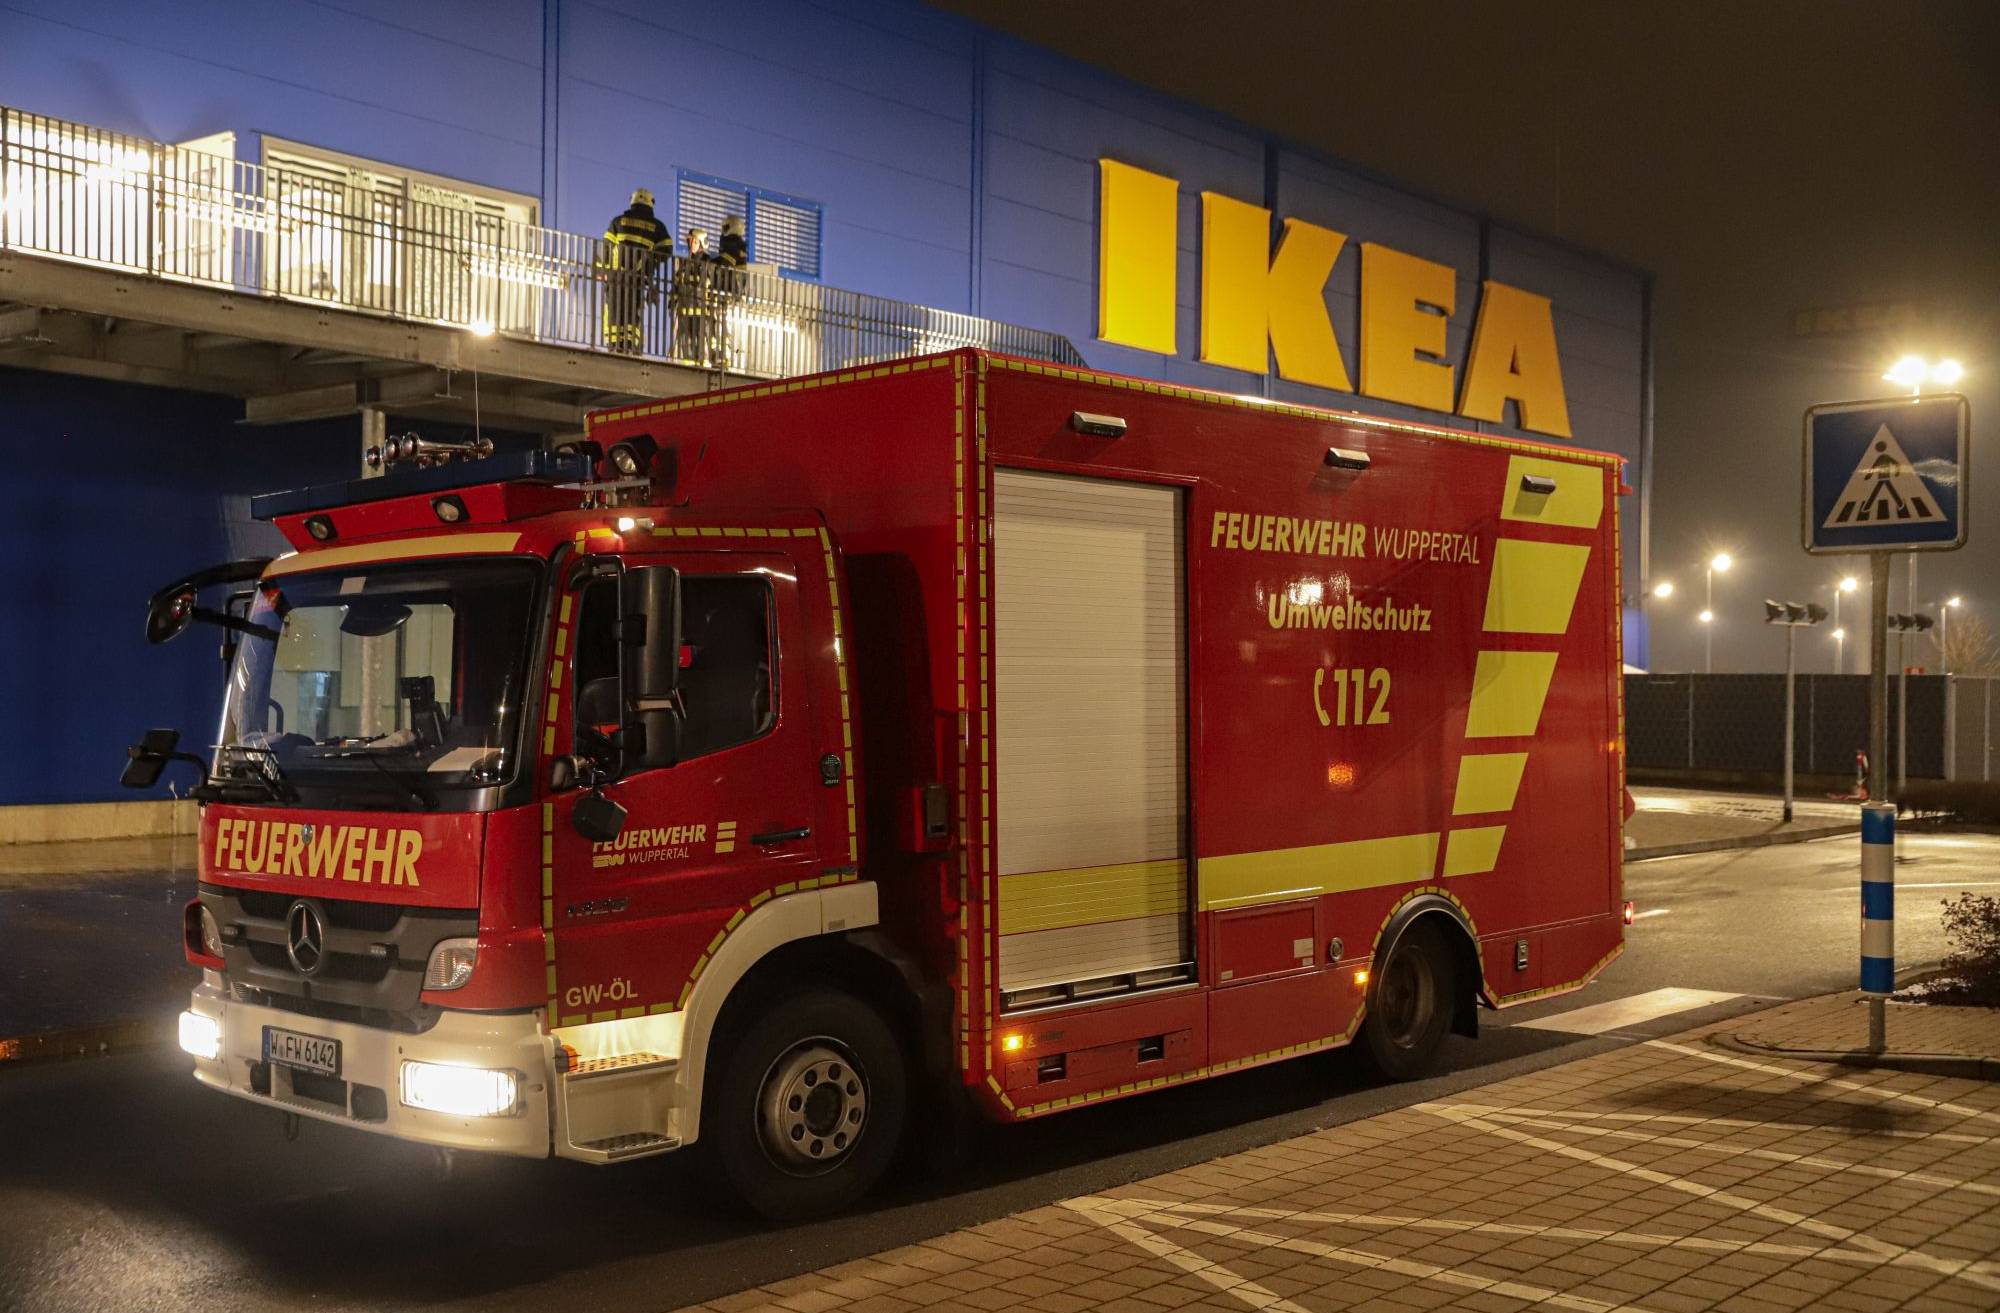 Mit Bildern: Wuppertaler IKEA nach Brand geräumt